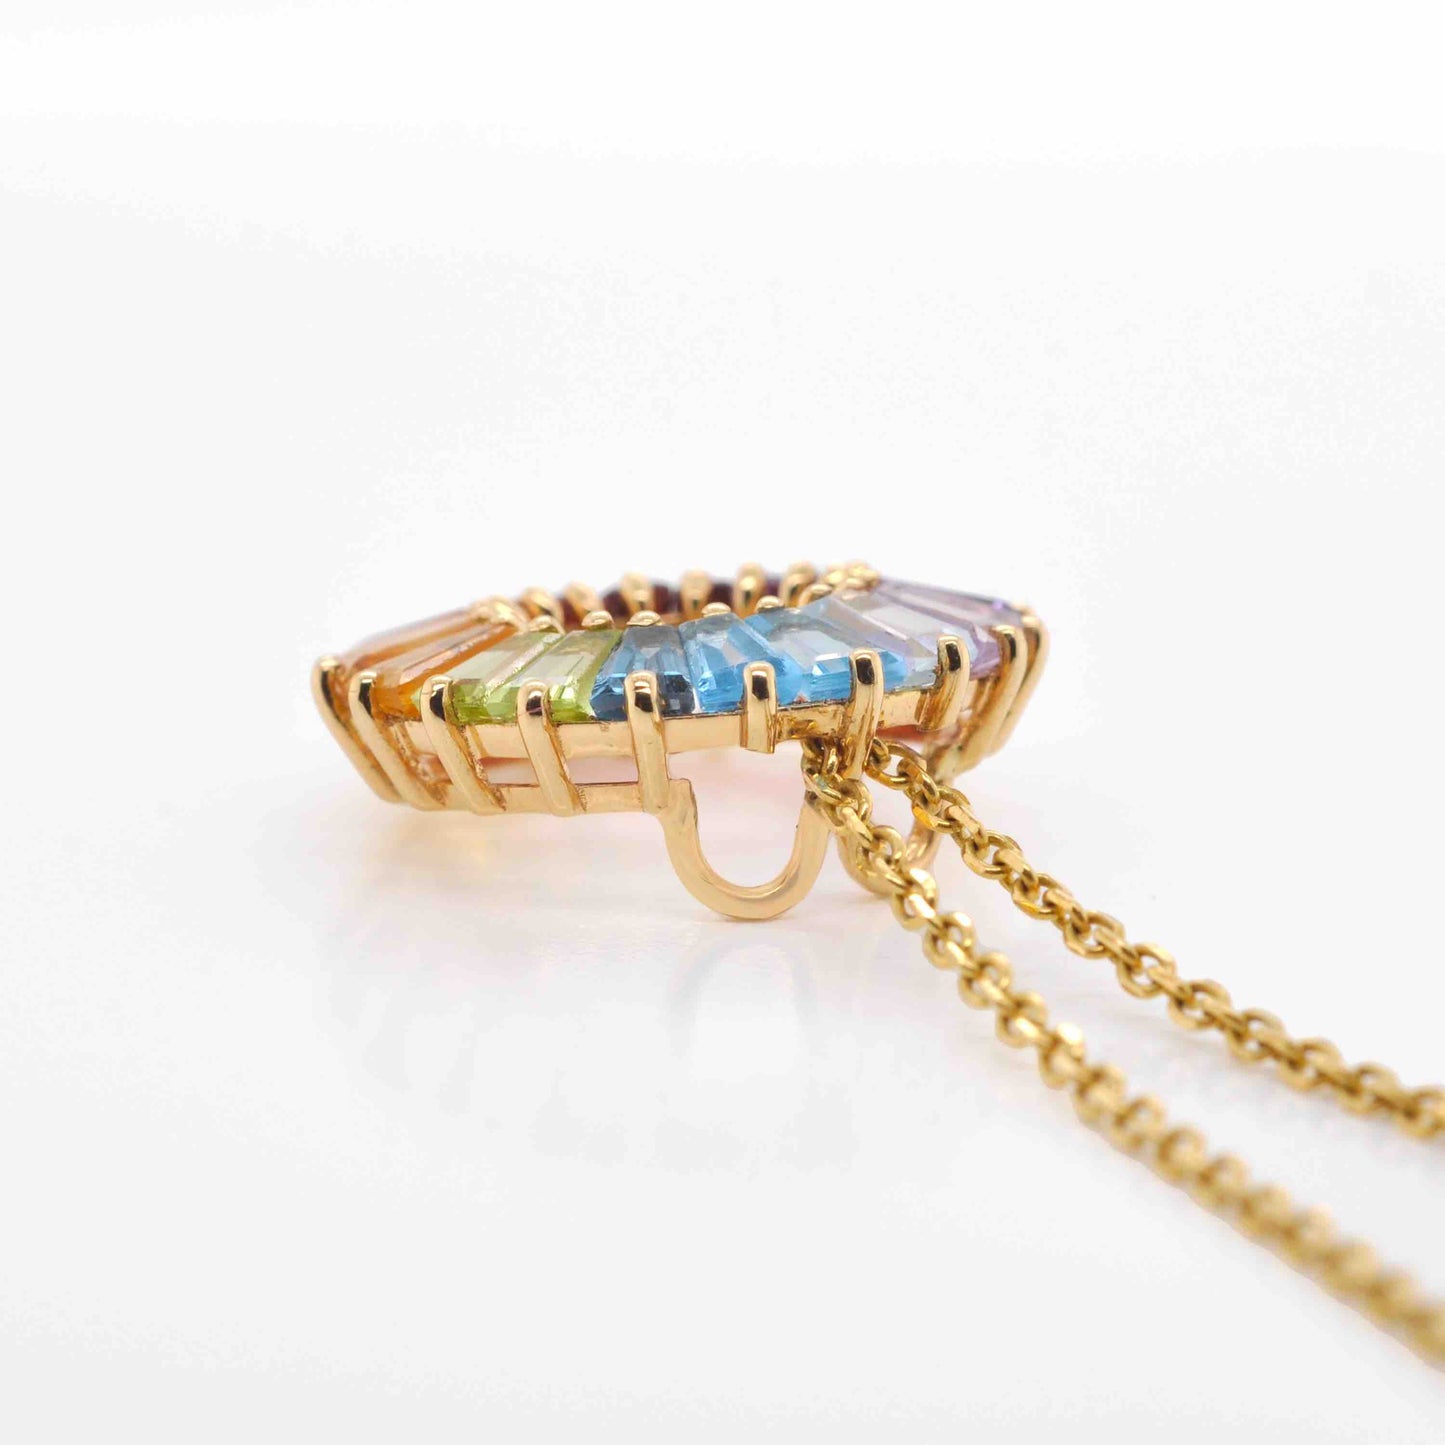 18K Gold Prong-set Rainbow Gemstones Circle Pendant Necklace - Vaibhav Dhadda Jewelry